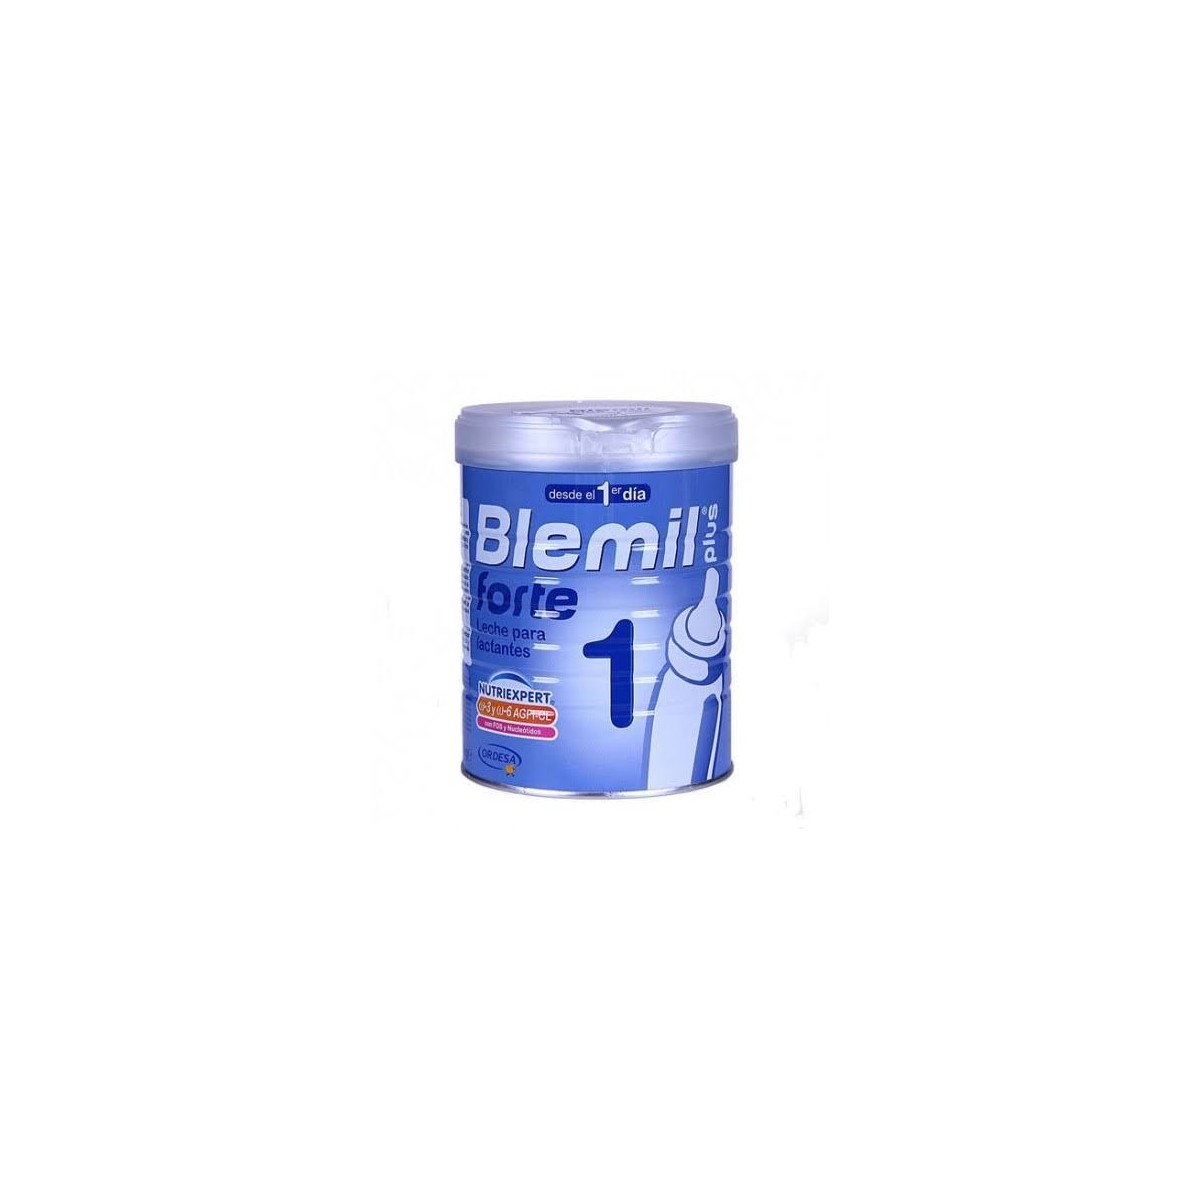 blemil-1-plus-forte-800-g